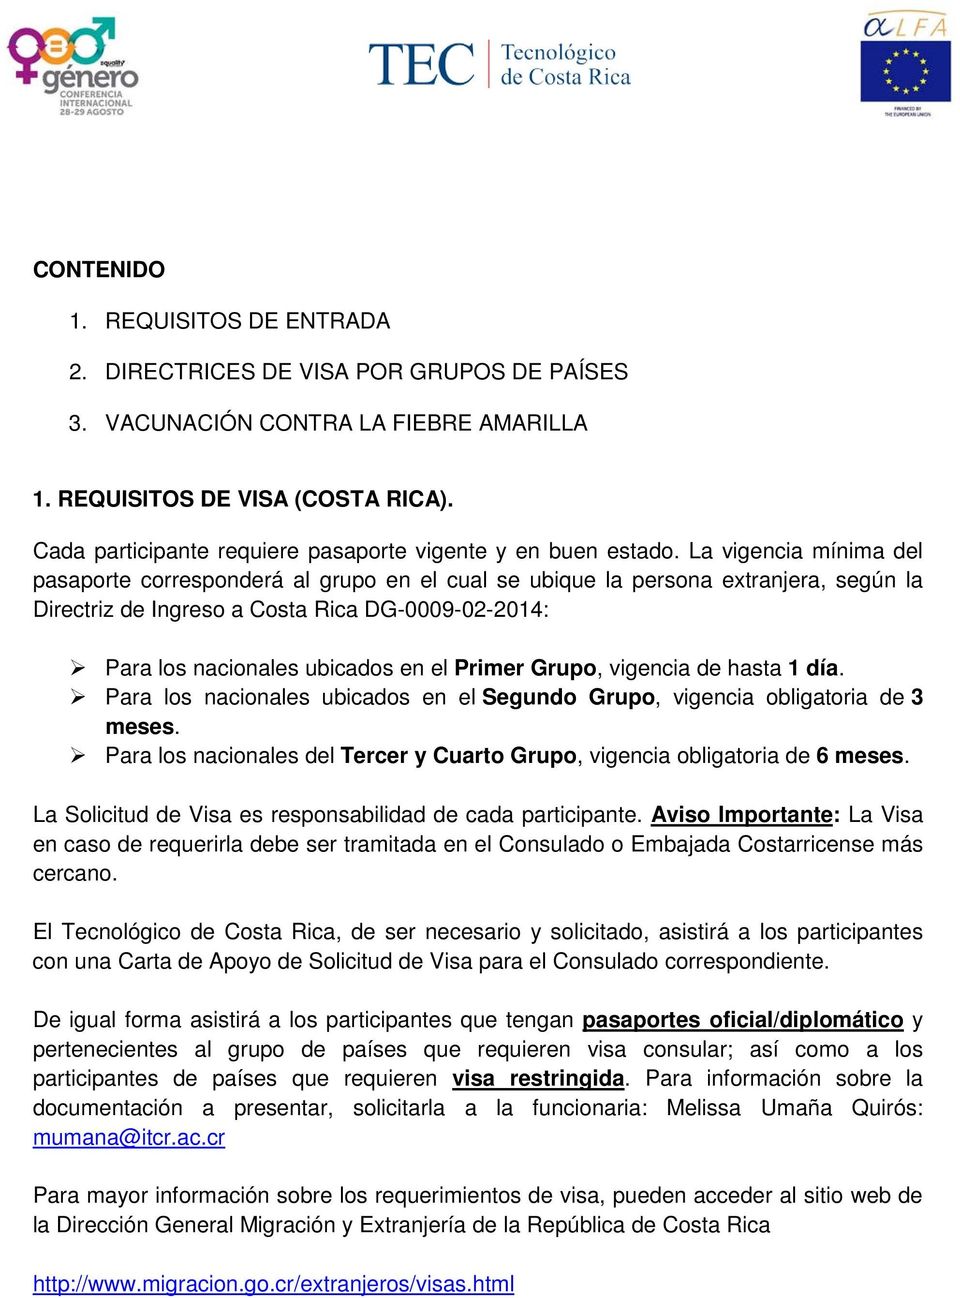 La vigencia mínima del pasaporte corresponderá al grupo en el cual se ubique la persona extranjera, según la Directriz de Ingreso a Costa Rica DG-0009-02-2014: Para los nacionales ubicados en el